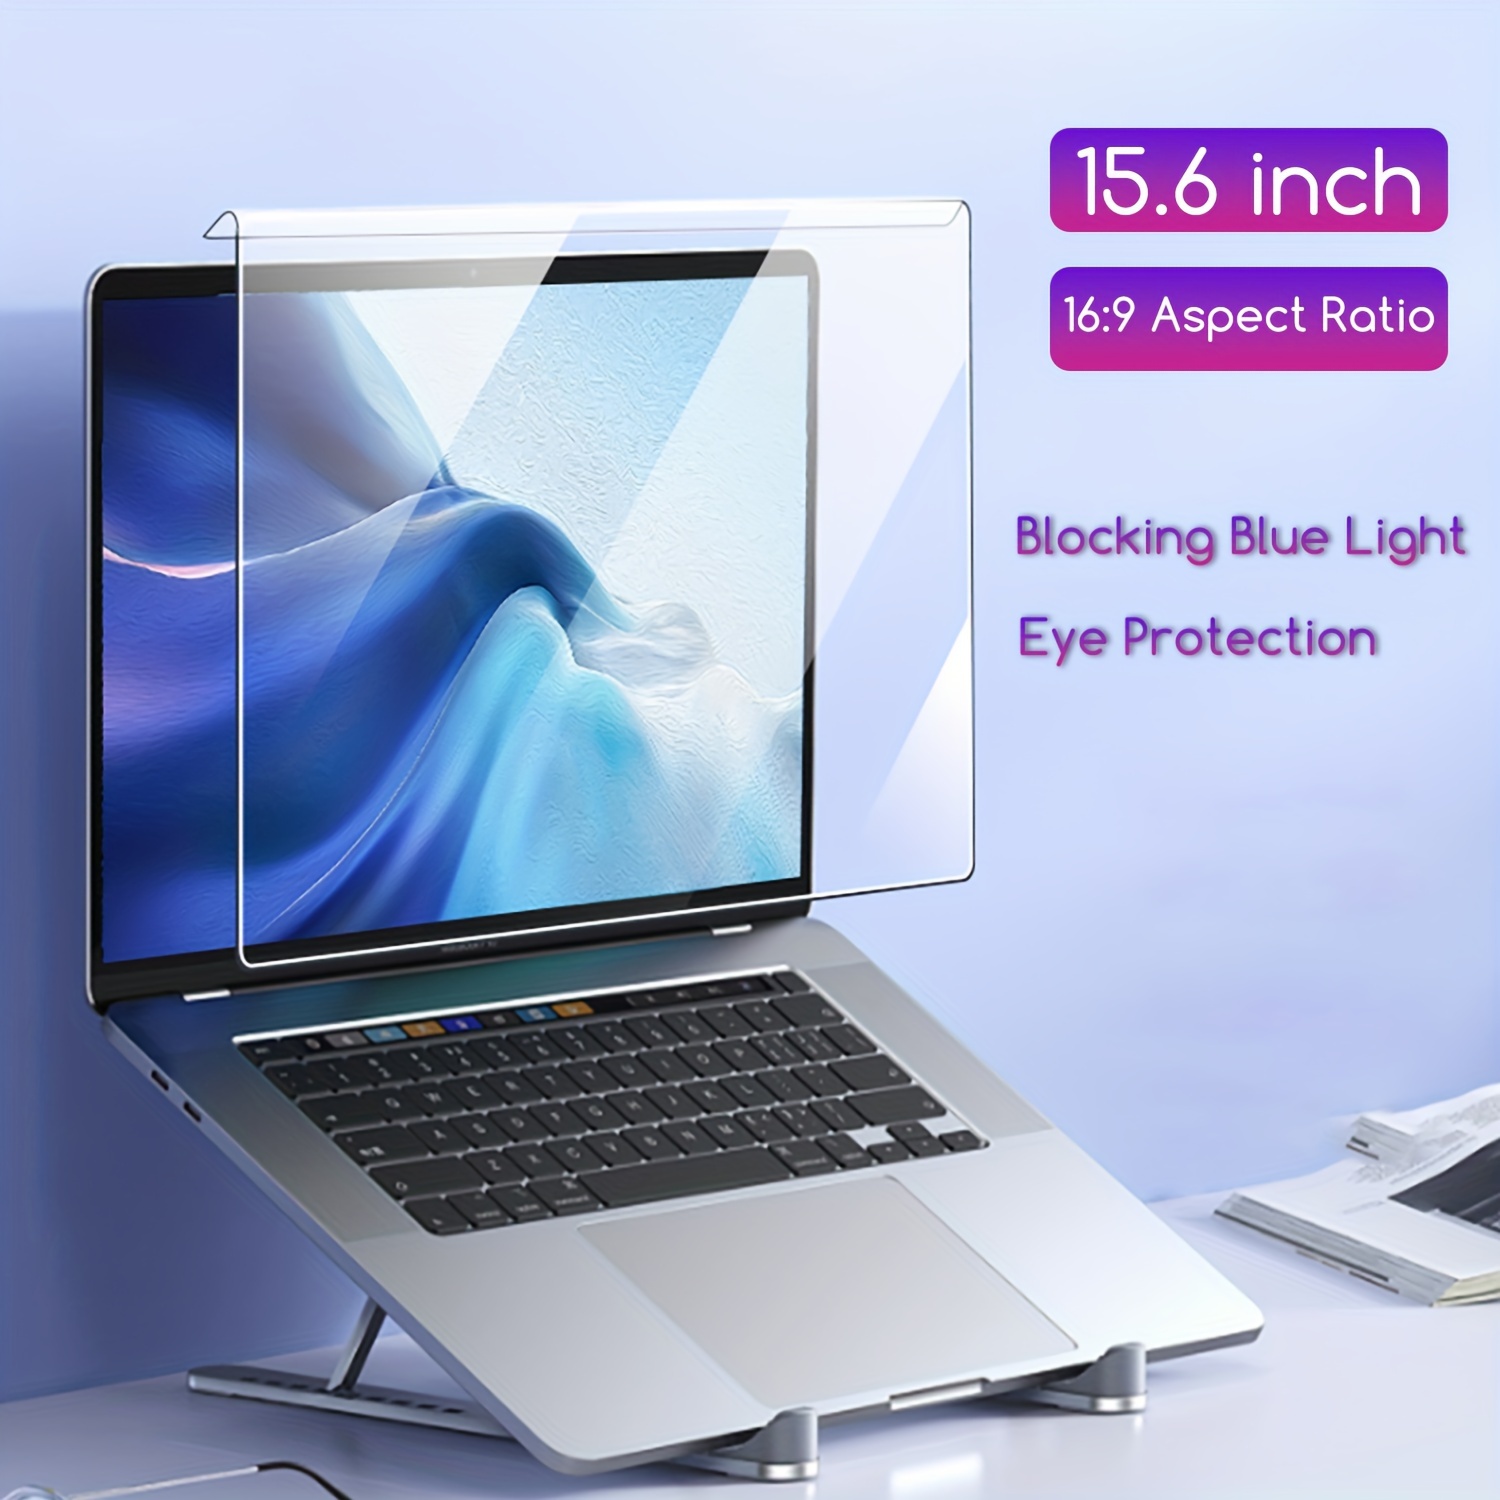 Protector de pantalla antideslumbrante con luz azul de 20 pulgadas para  Dell/HP/Acer/ViewSonic/ASUS/Aoc/Samsung/Sceptre/LG Diagonal de 20 pulgadas